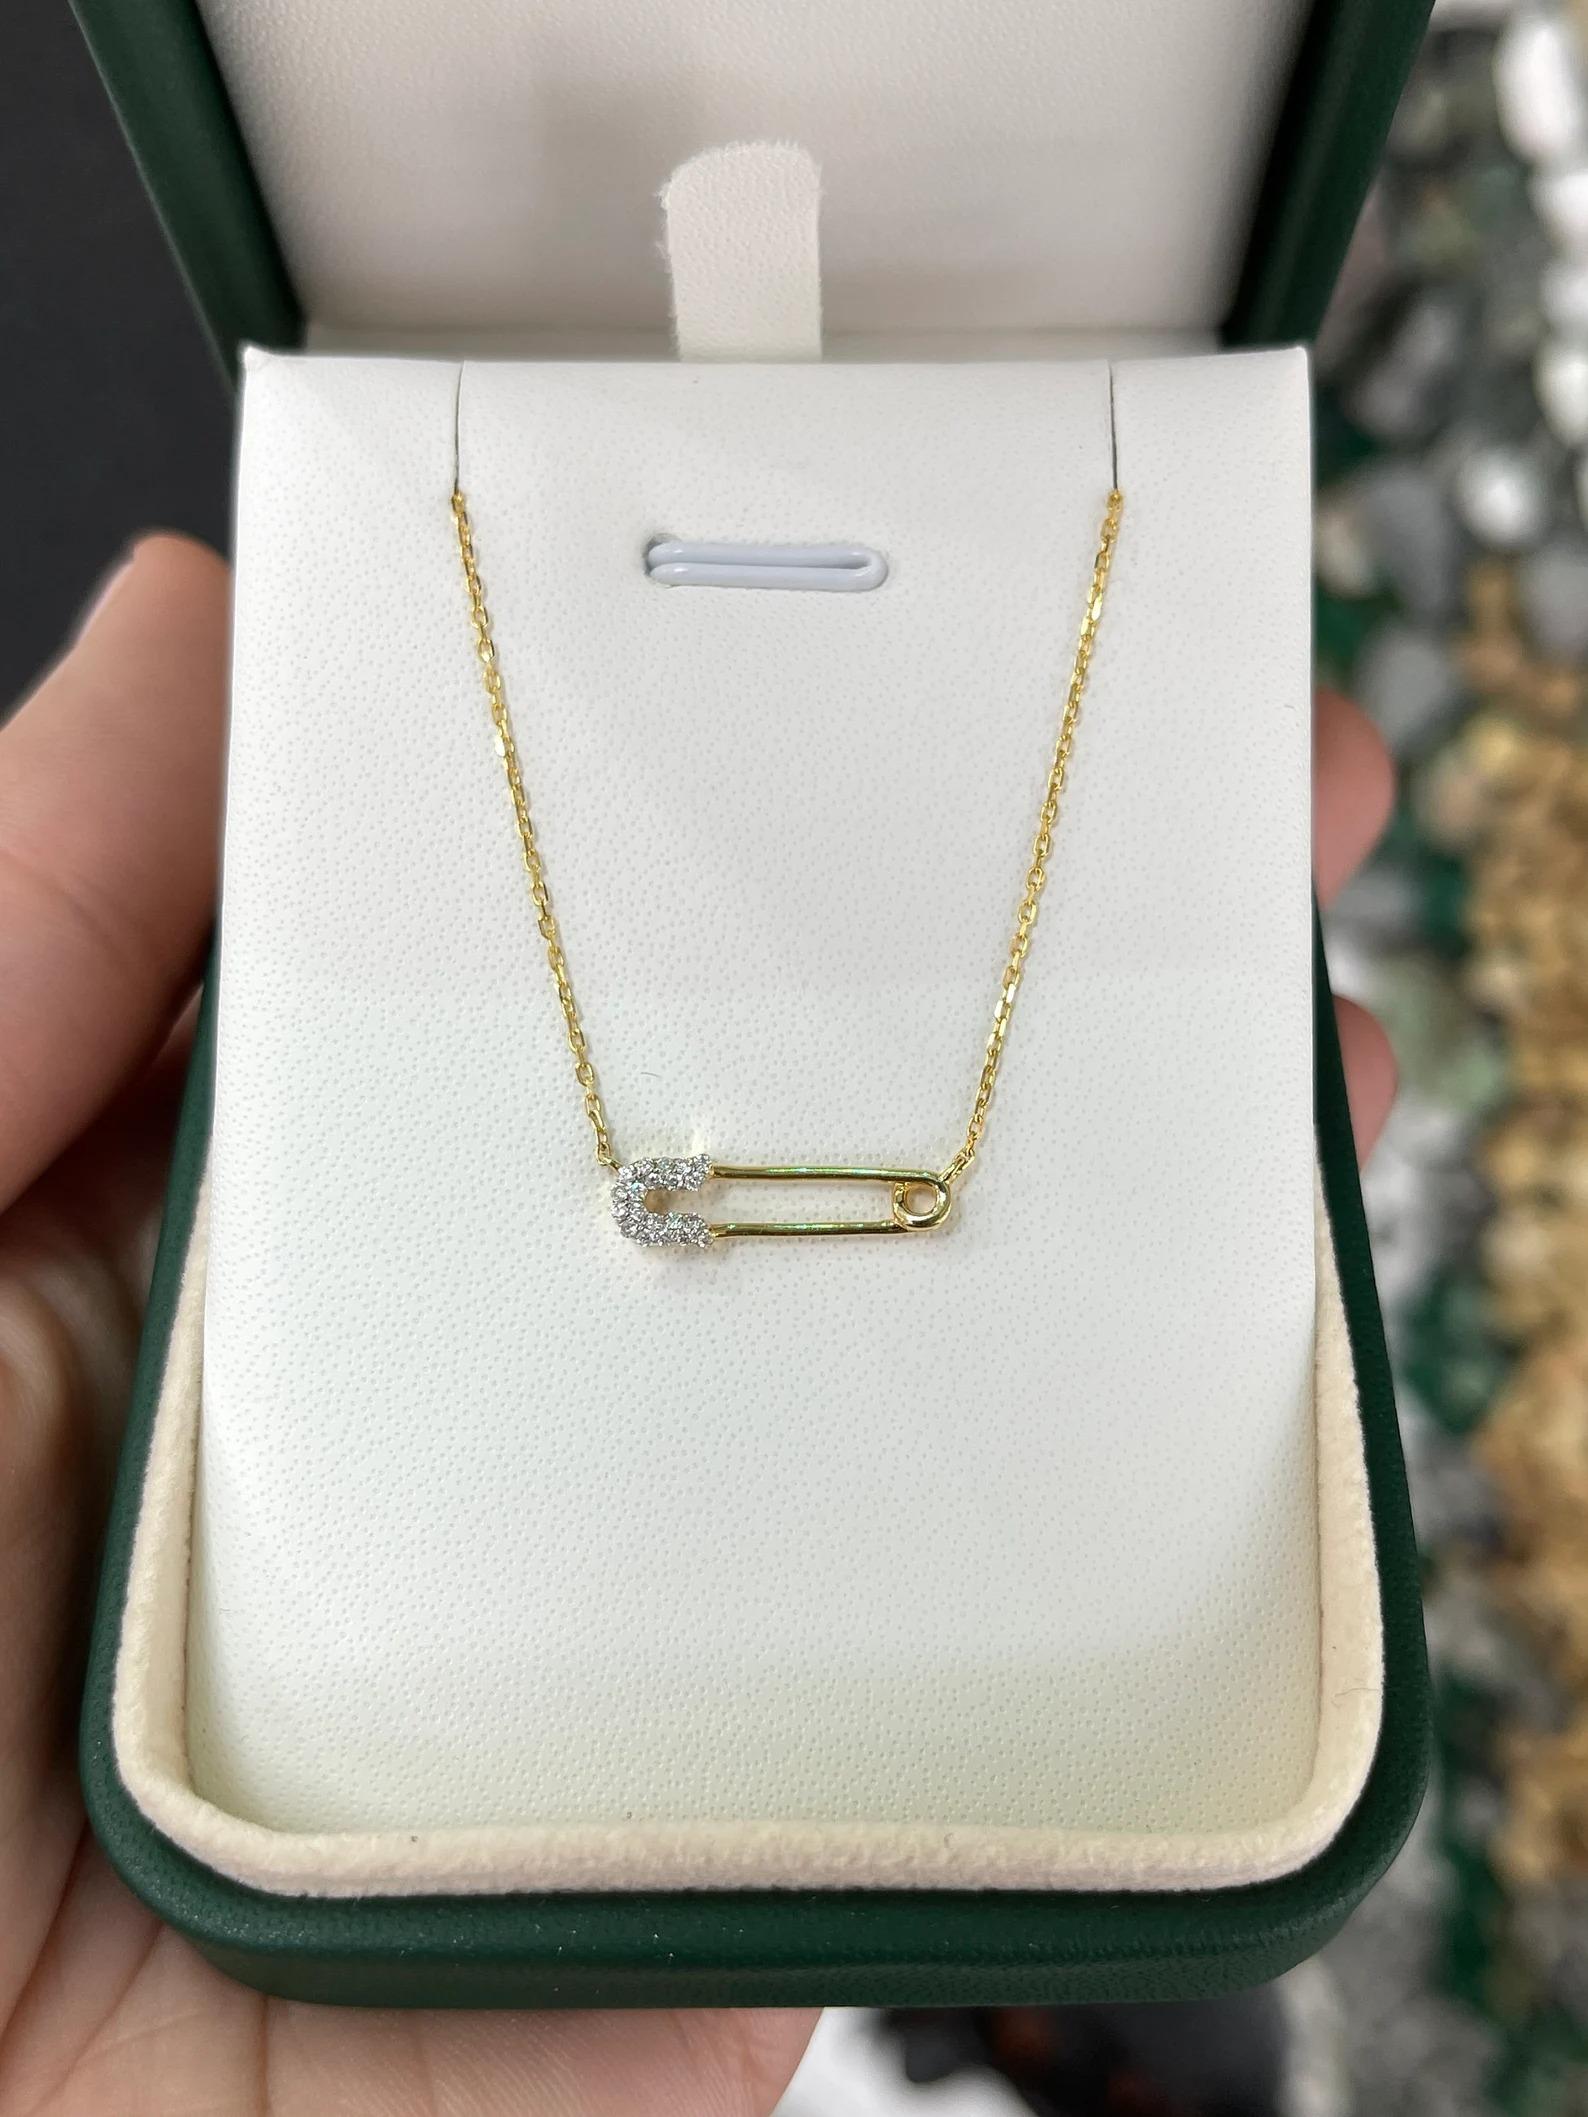 Ce collier est composé d'une épingle de sûreté en or ornée d'un diamant naturel. Cette pièce comporte une belle épingle à nourrice avec des accents de diamants sur la base, attachée à une chaîne de câble ajustable de 16 à 18 pouces. Fabriqué en or